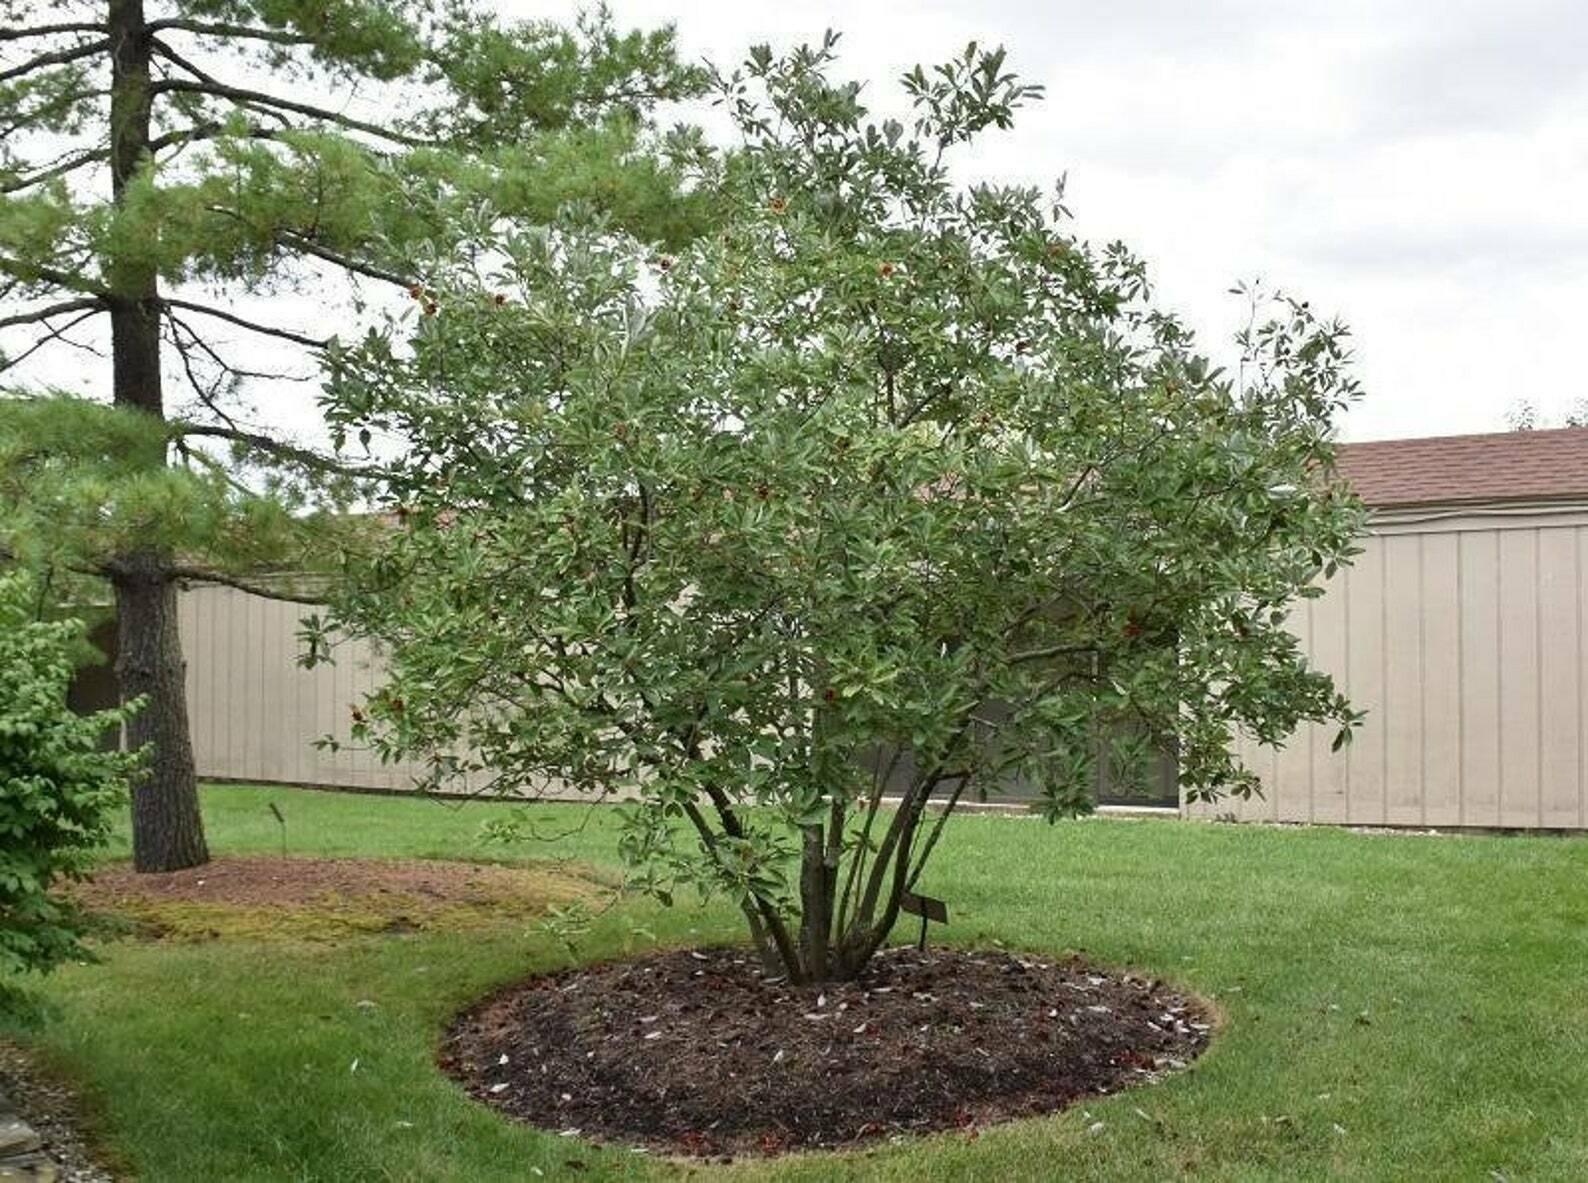 Sweetbay Magnolia Tree - 24-36" Tall Live Plant, Gallon Pot, Magnolia virginiana - The Nursery Center